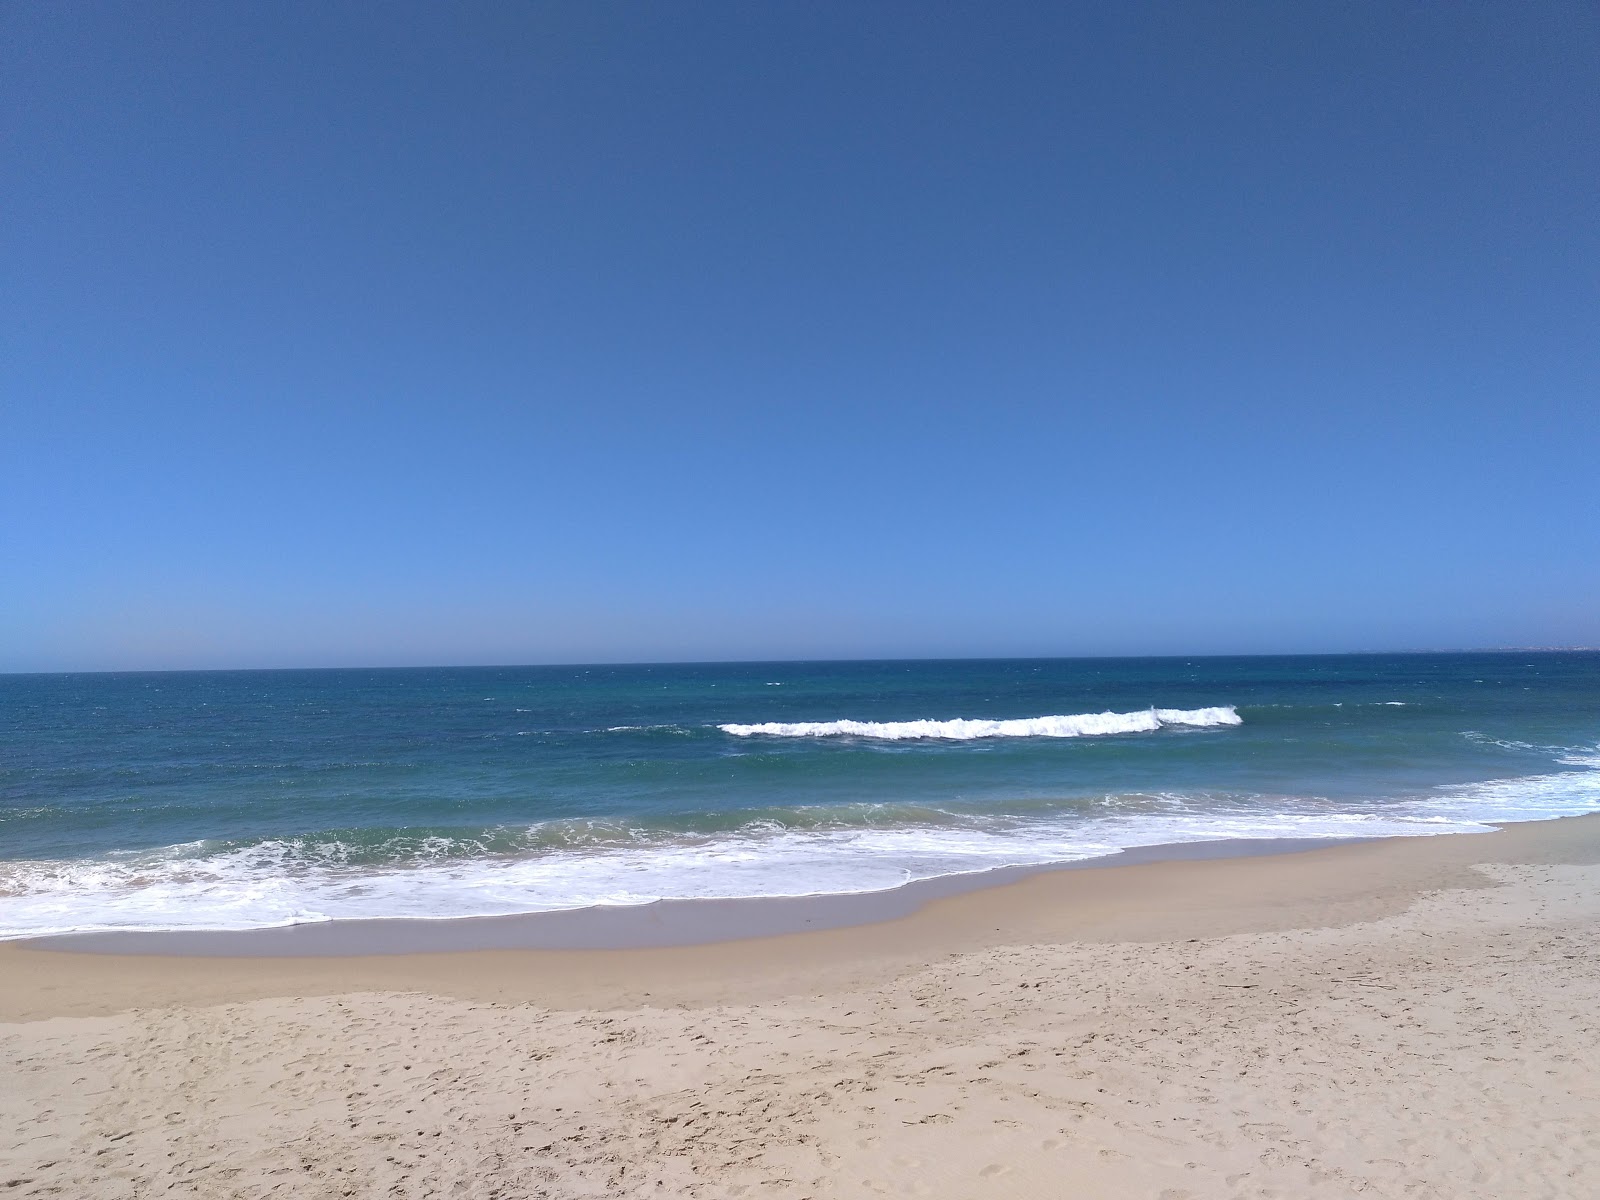 Foto af Praia da Areia Branca - populært sted blandt afslapningskendere